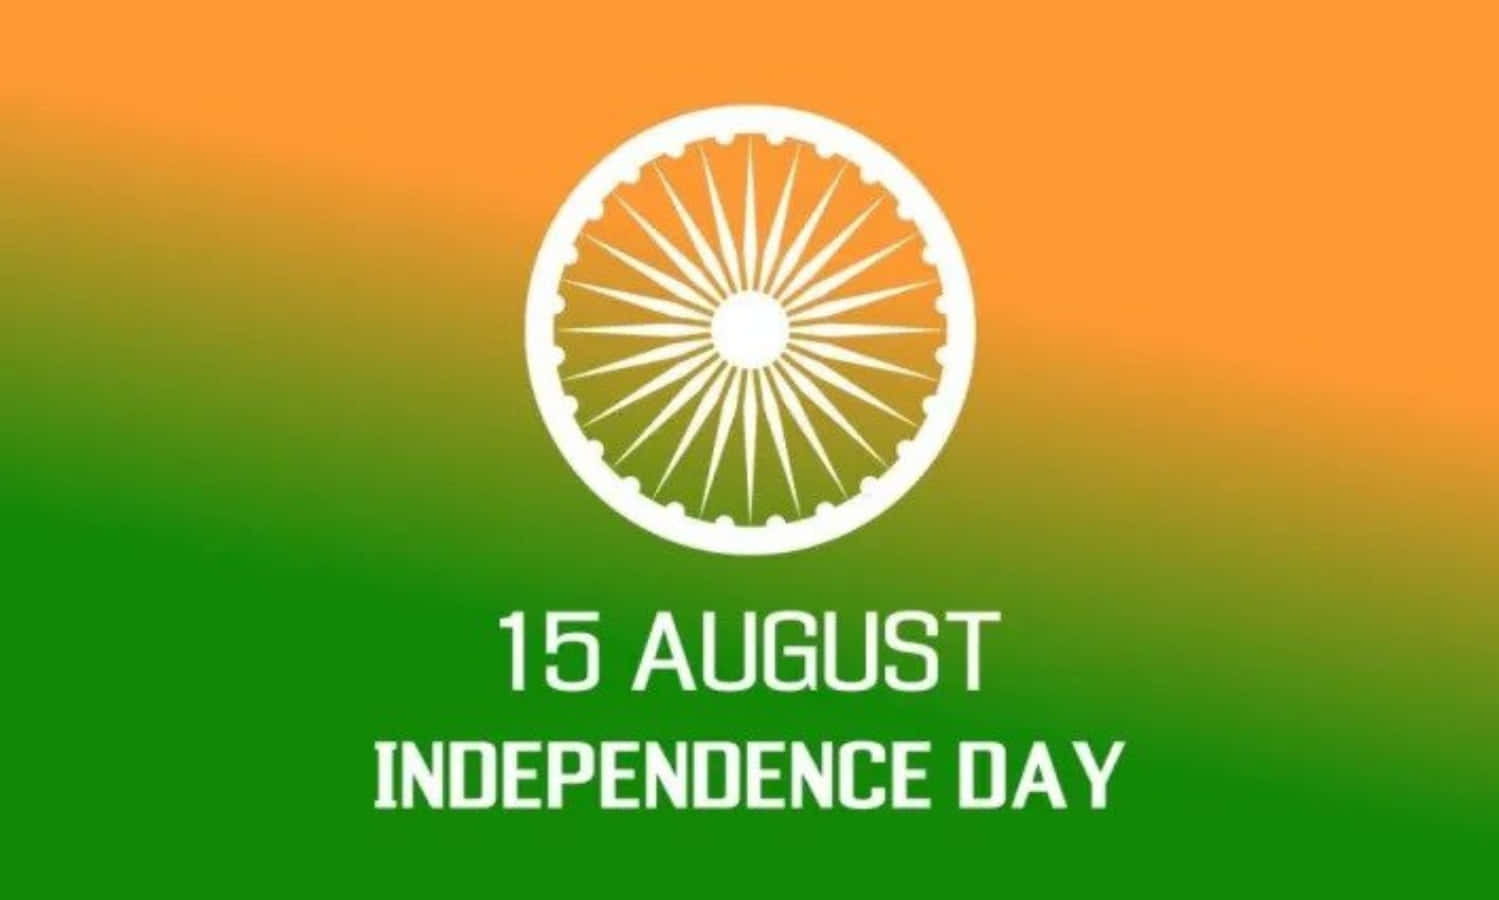 Indienssjälvständighetsdag - Bild Av Den Gröna Och Orange Flaggan.